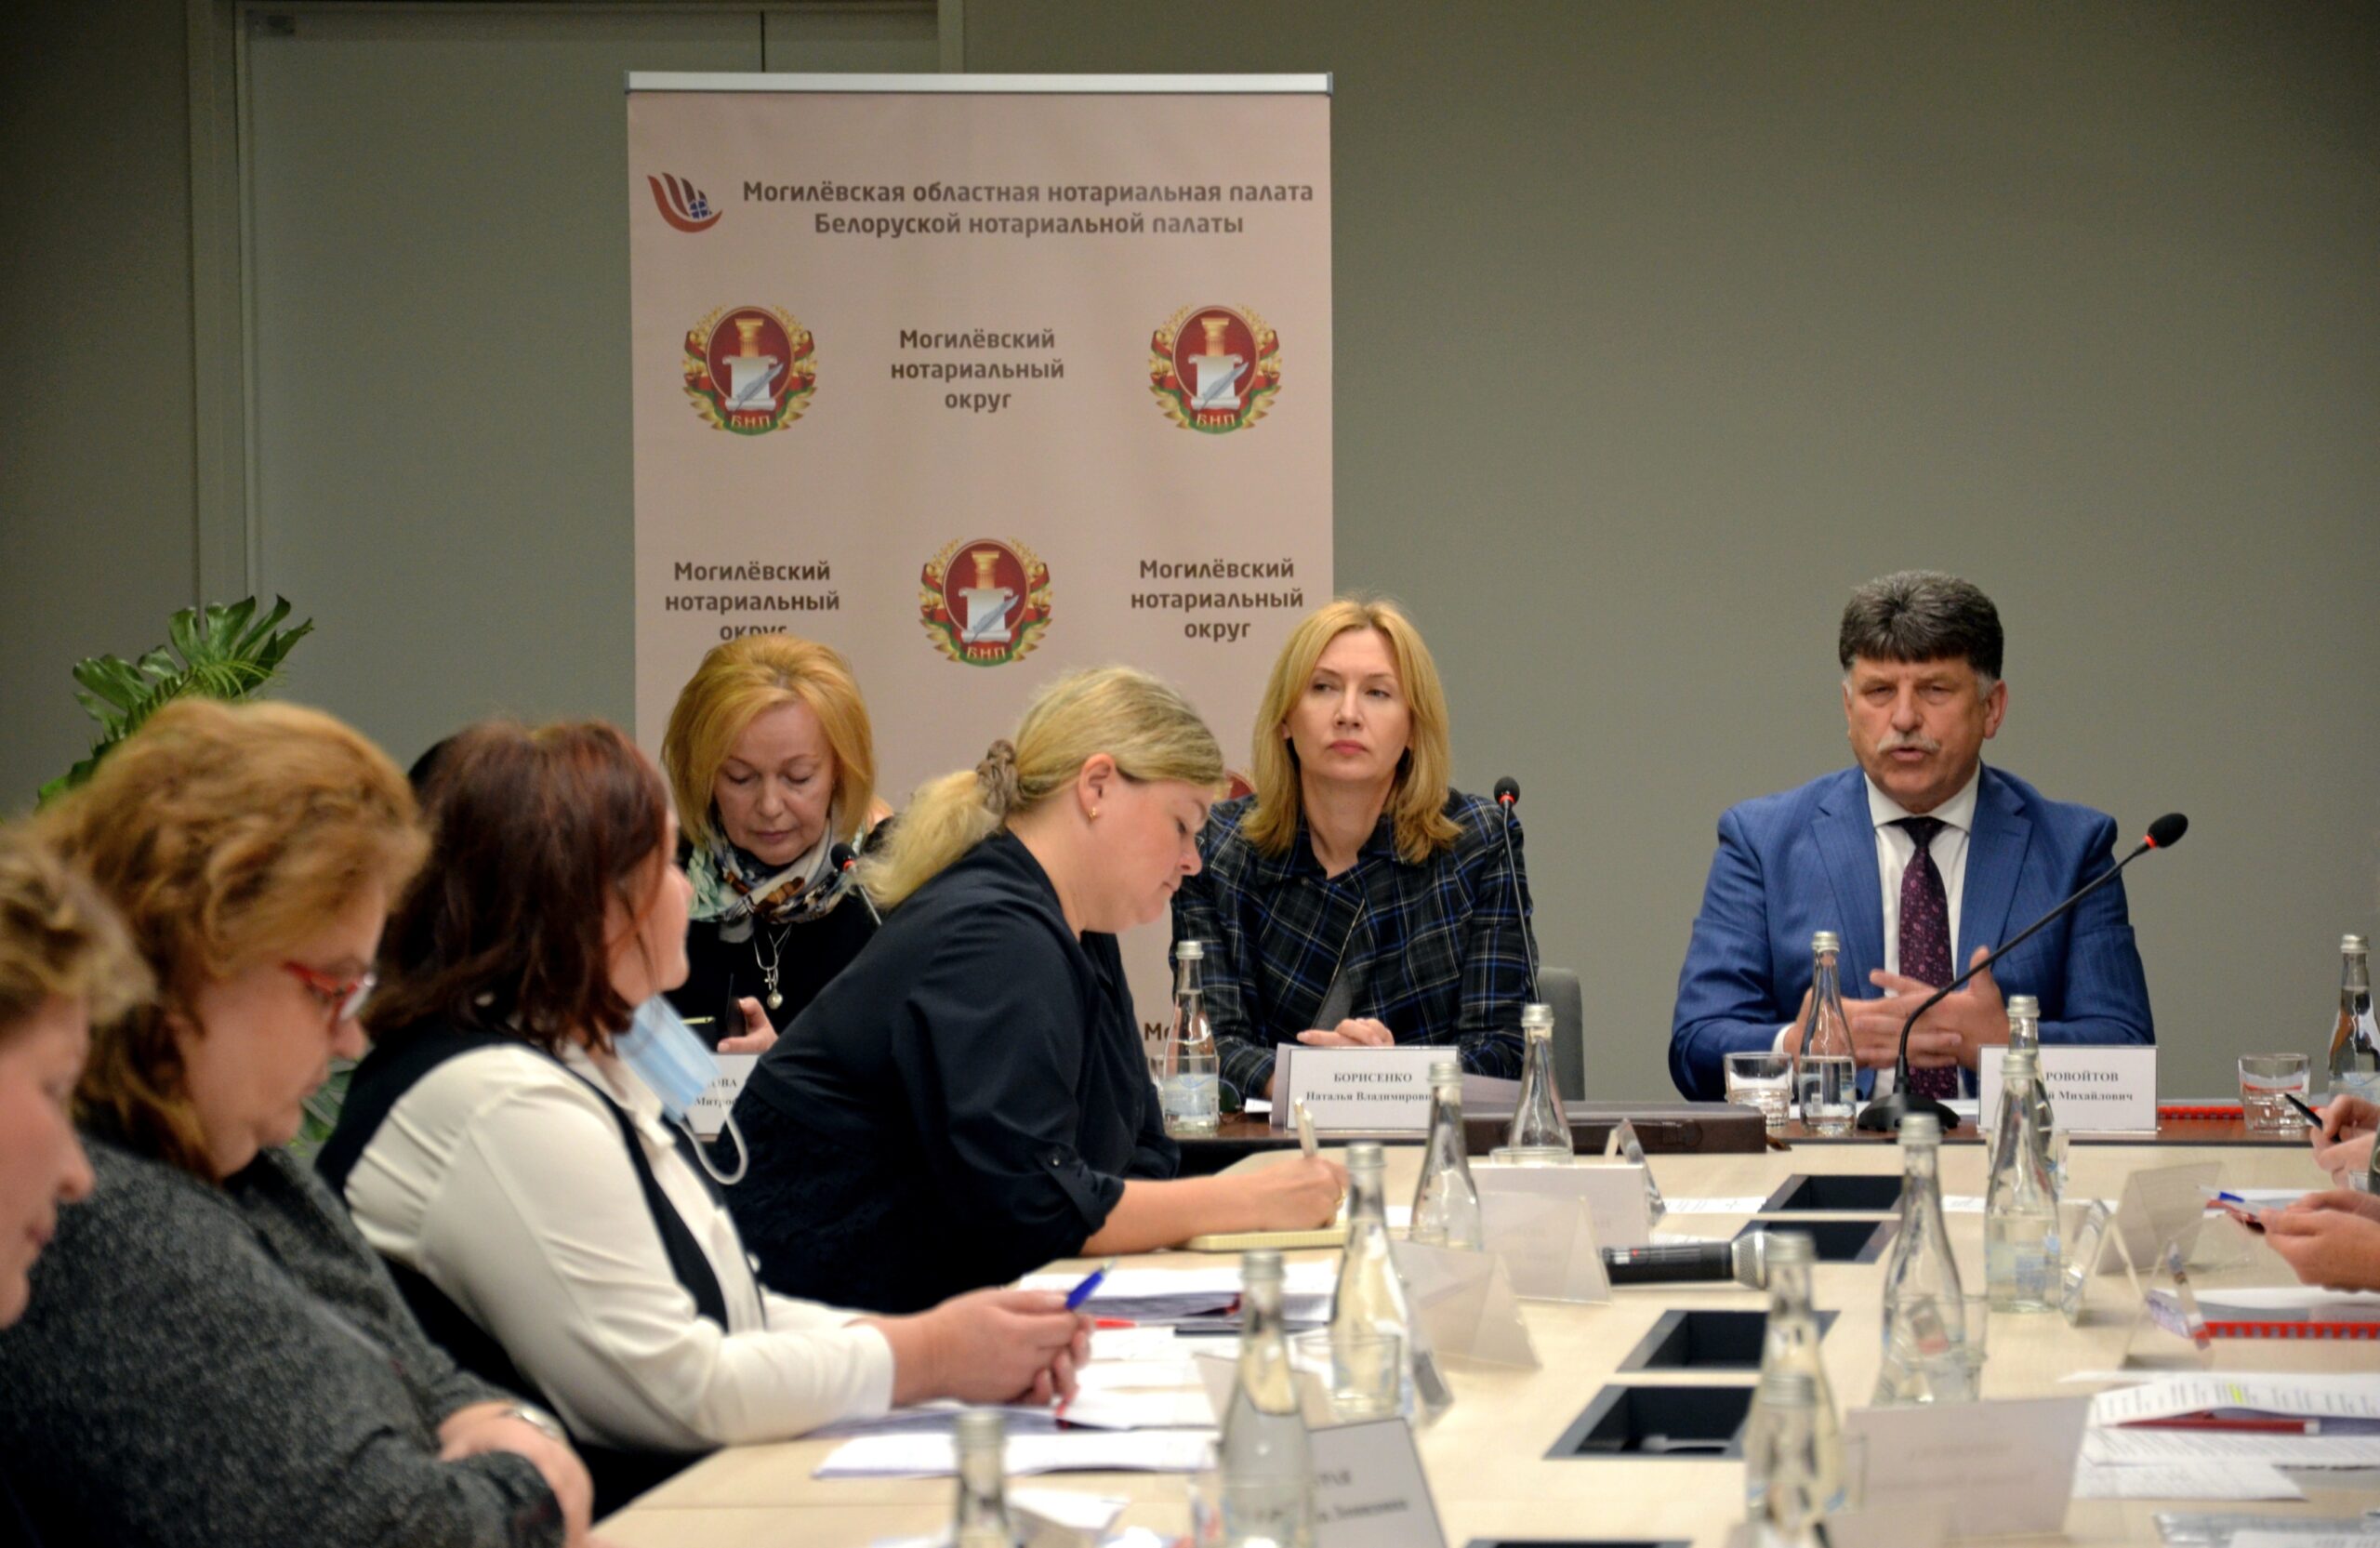 Расширенное заседание Совета нотариусов Могилевского нотариального округа состоялось в Могилеве